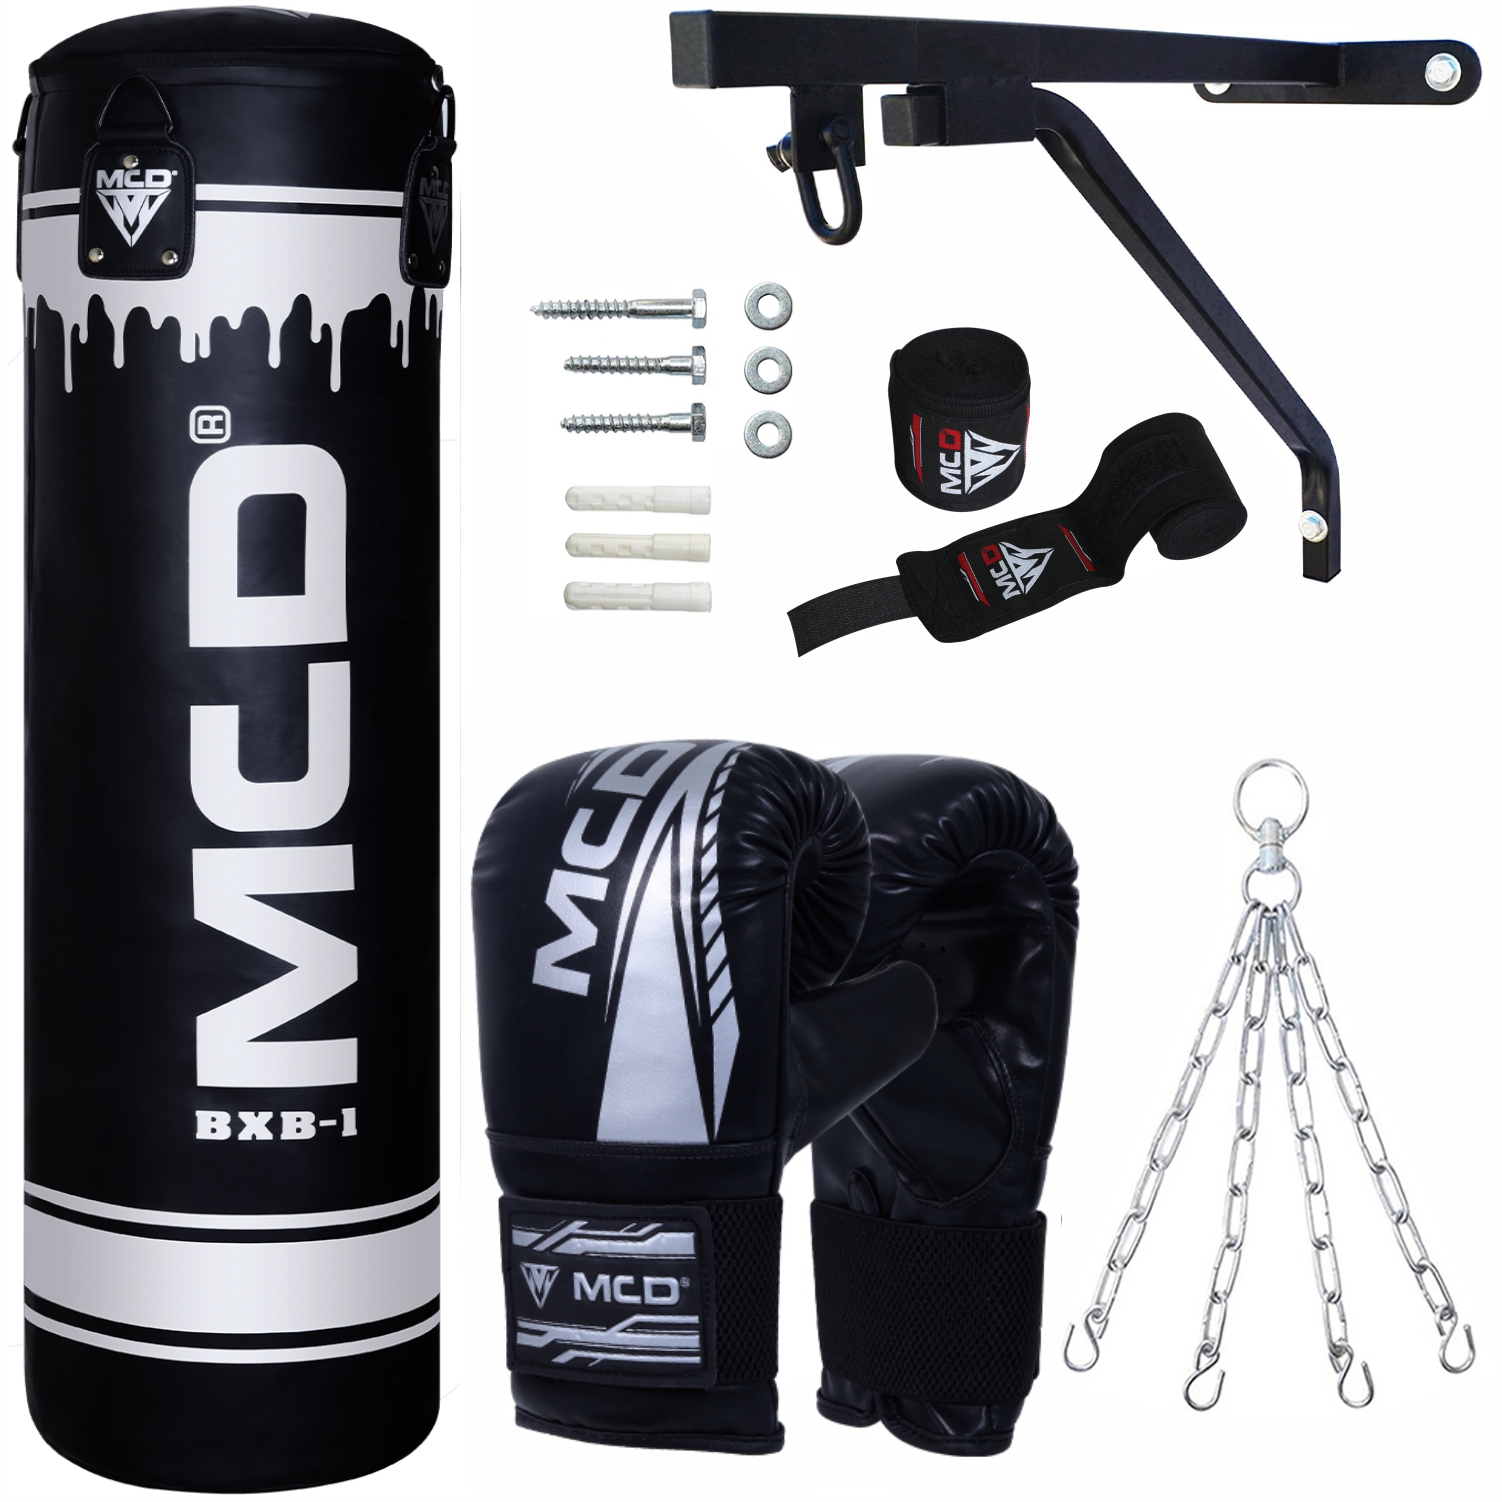 Mcd Punching Bag Boxing Bag Set Best For Professionals